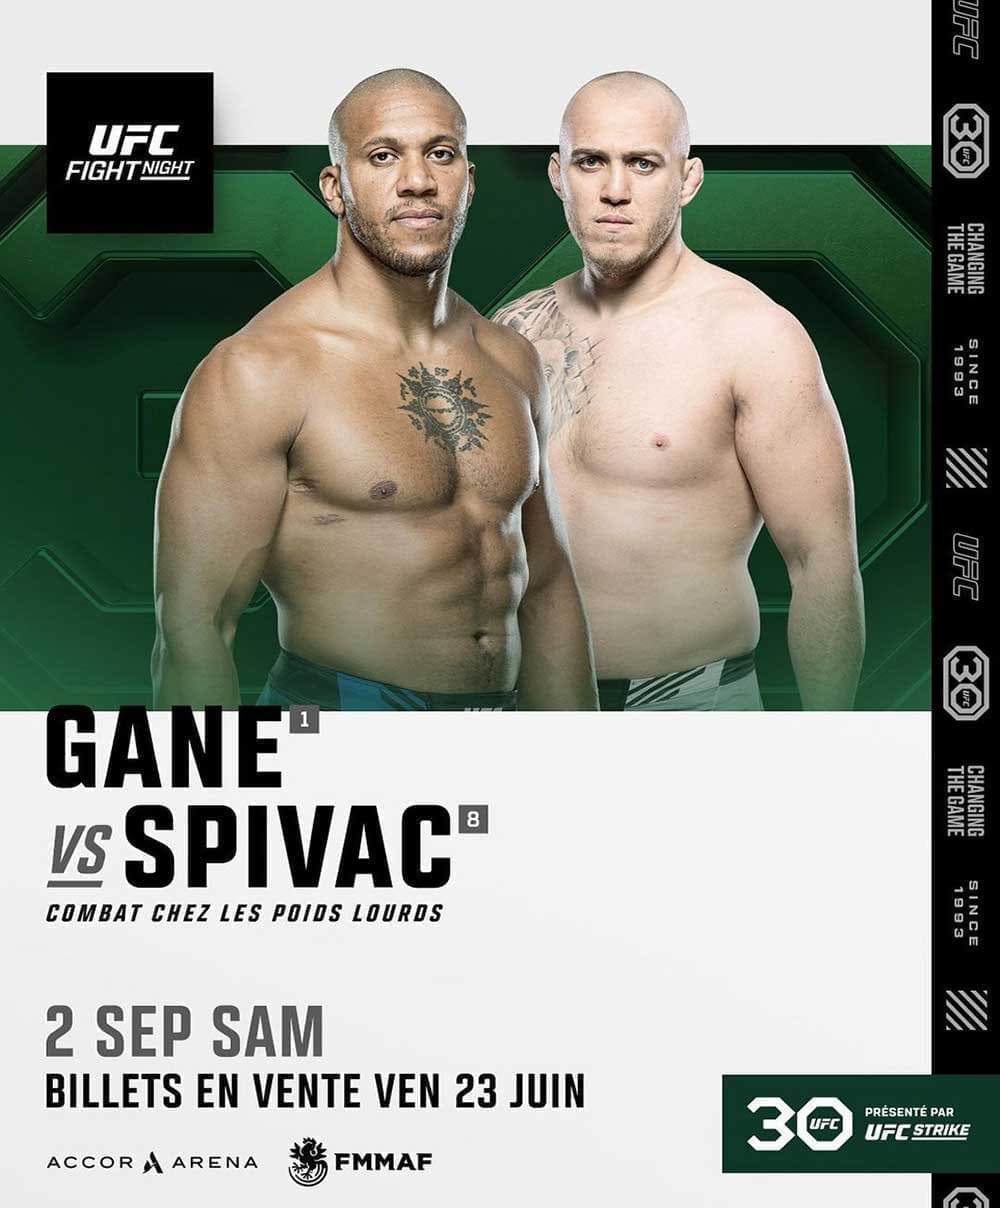 UFC Fight Night 226: Ган - Спивак дата проведения, кард, участники и результаты